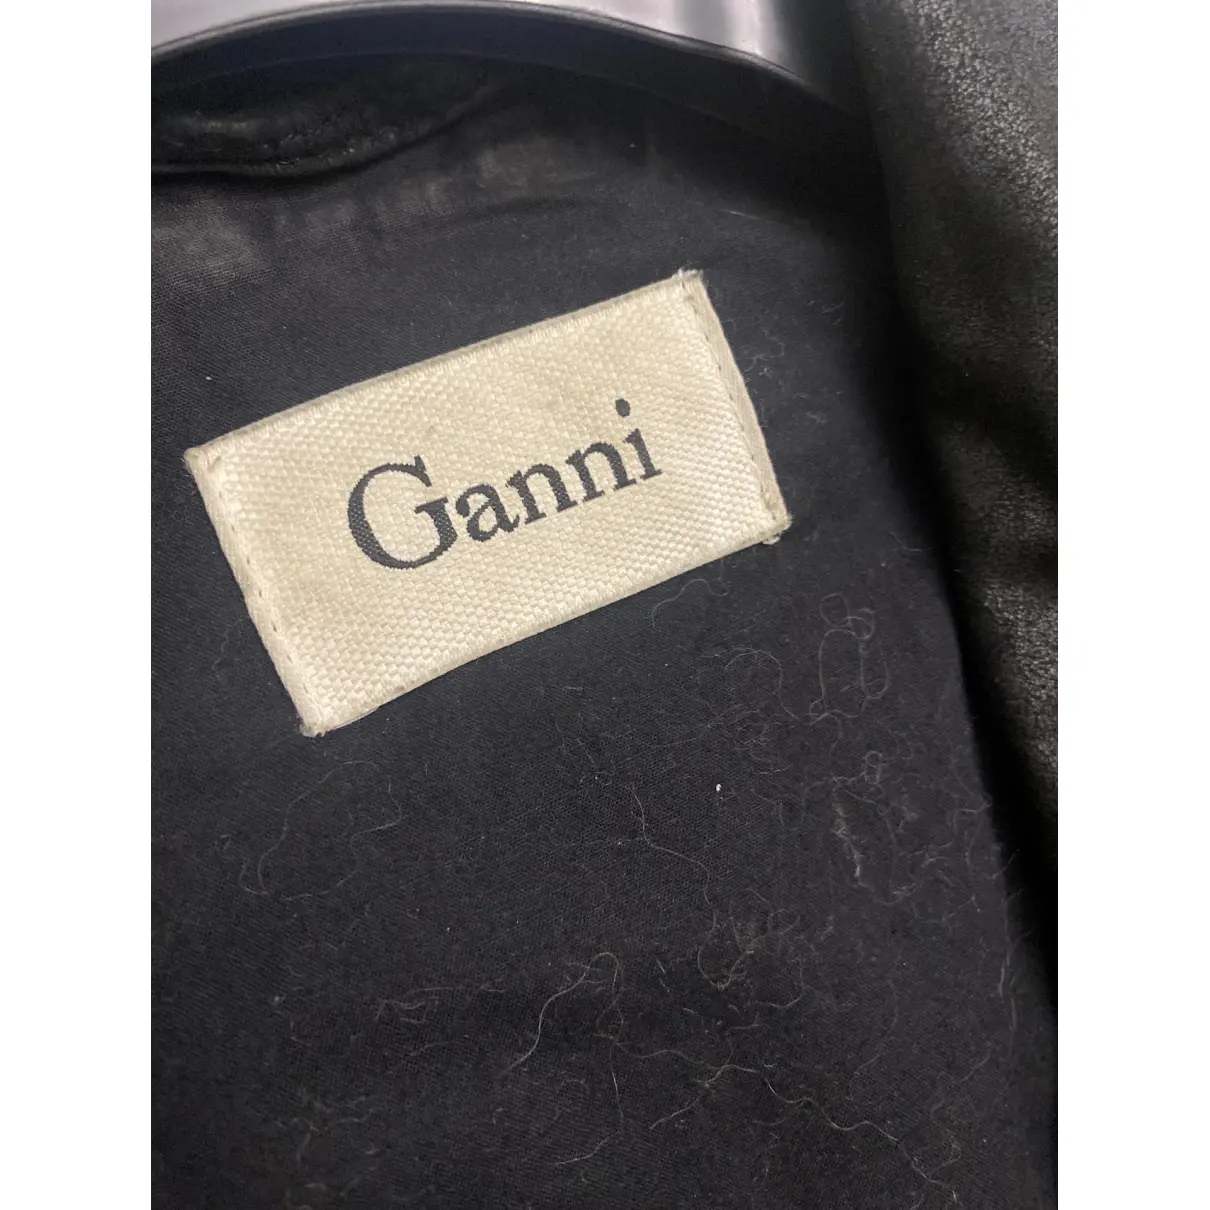 Buy Ganni Leather short vest online